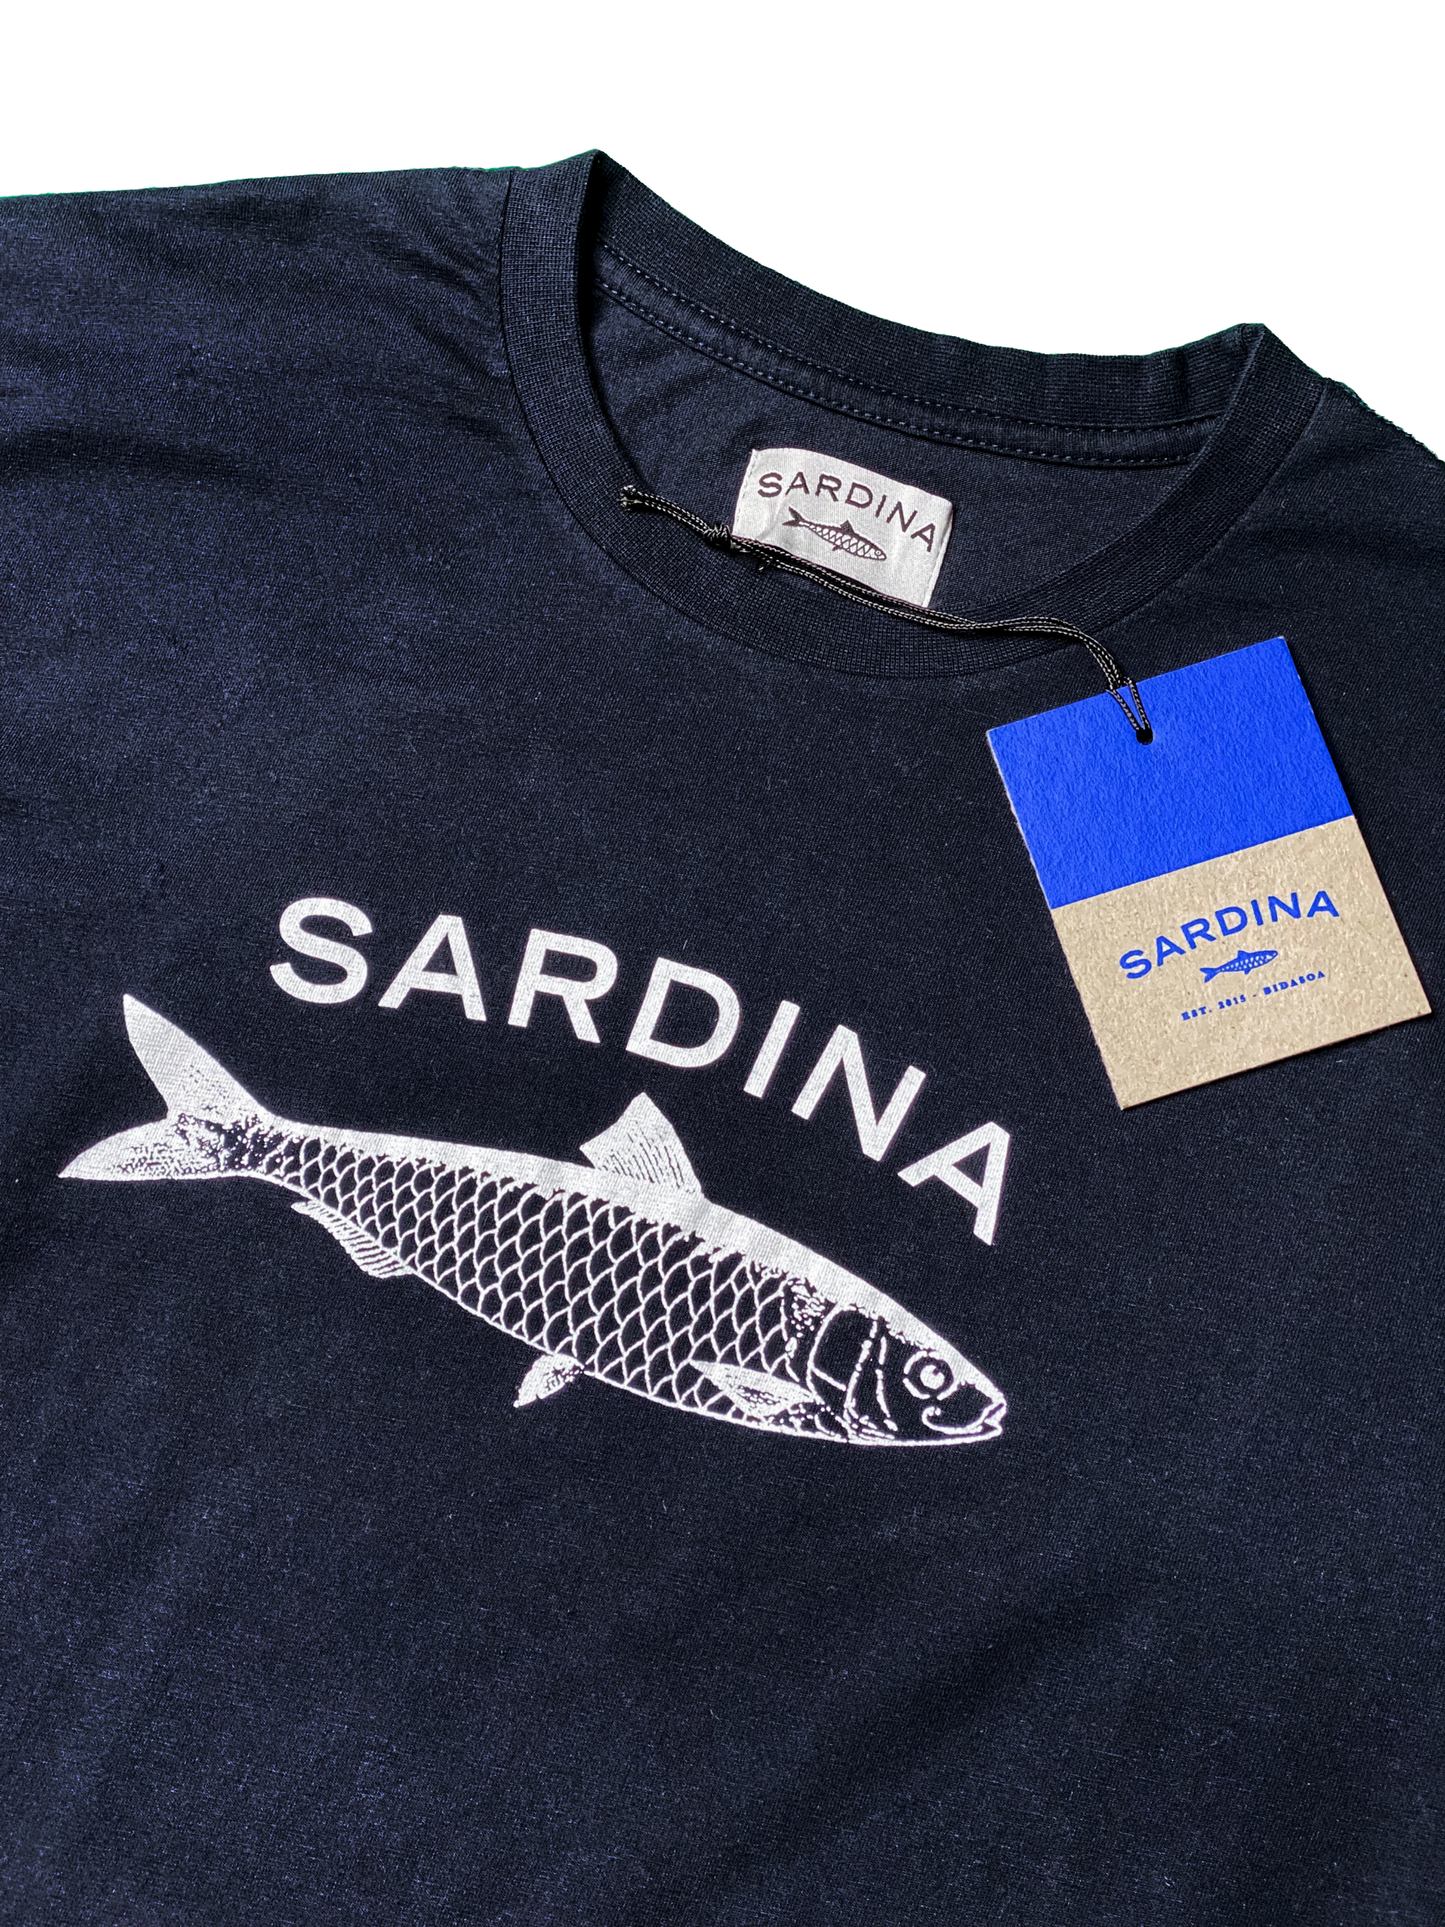 Tee-shirt à manches courtes - Sardina